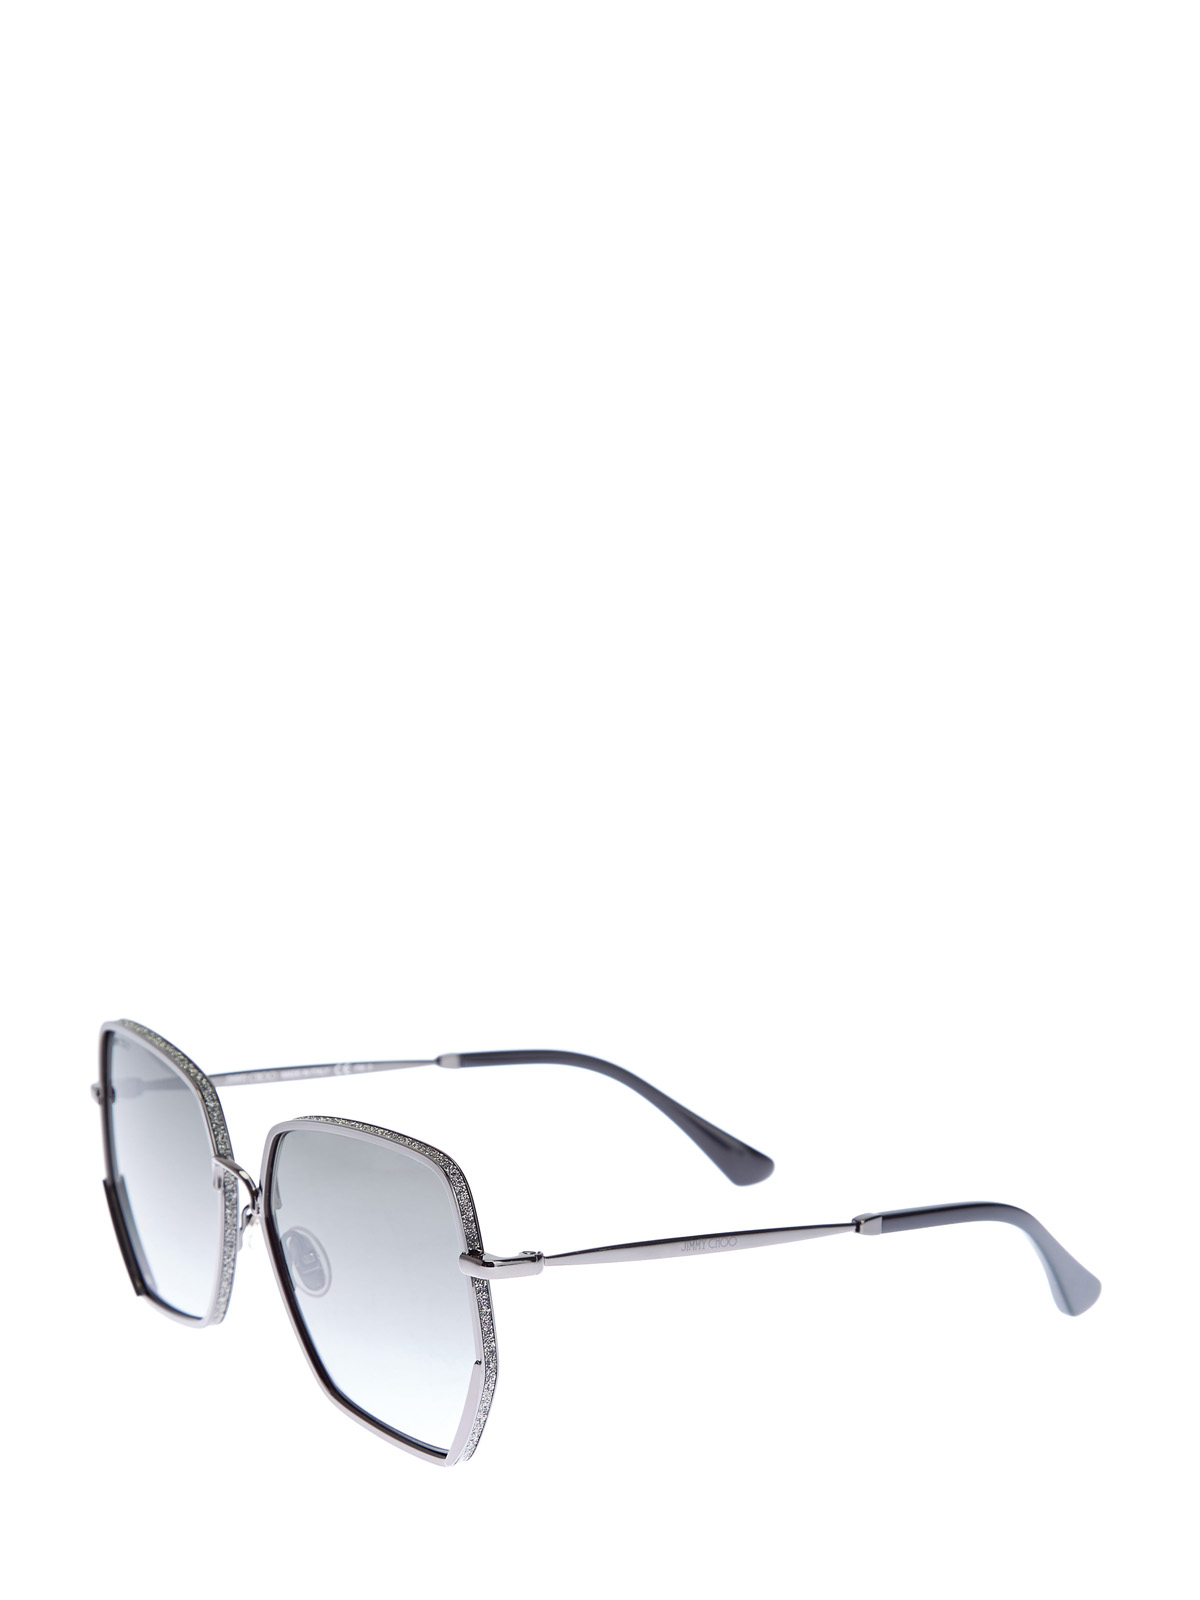 Очки Aline с металлической оправой и мерцающим напылением JIMMY CHOO  (sunglasses), цвет серый, размер S;M;L - фото 2